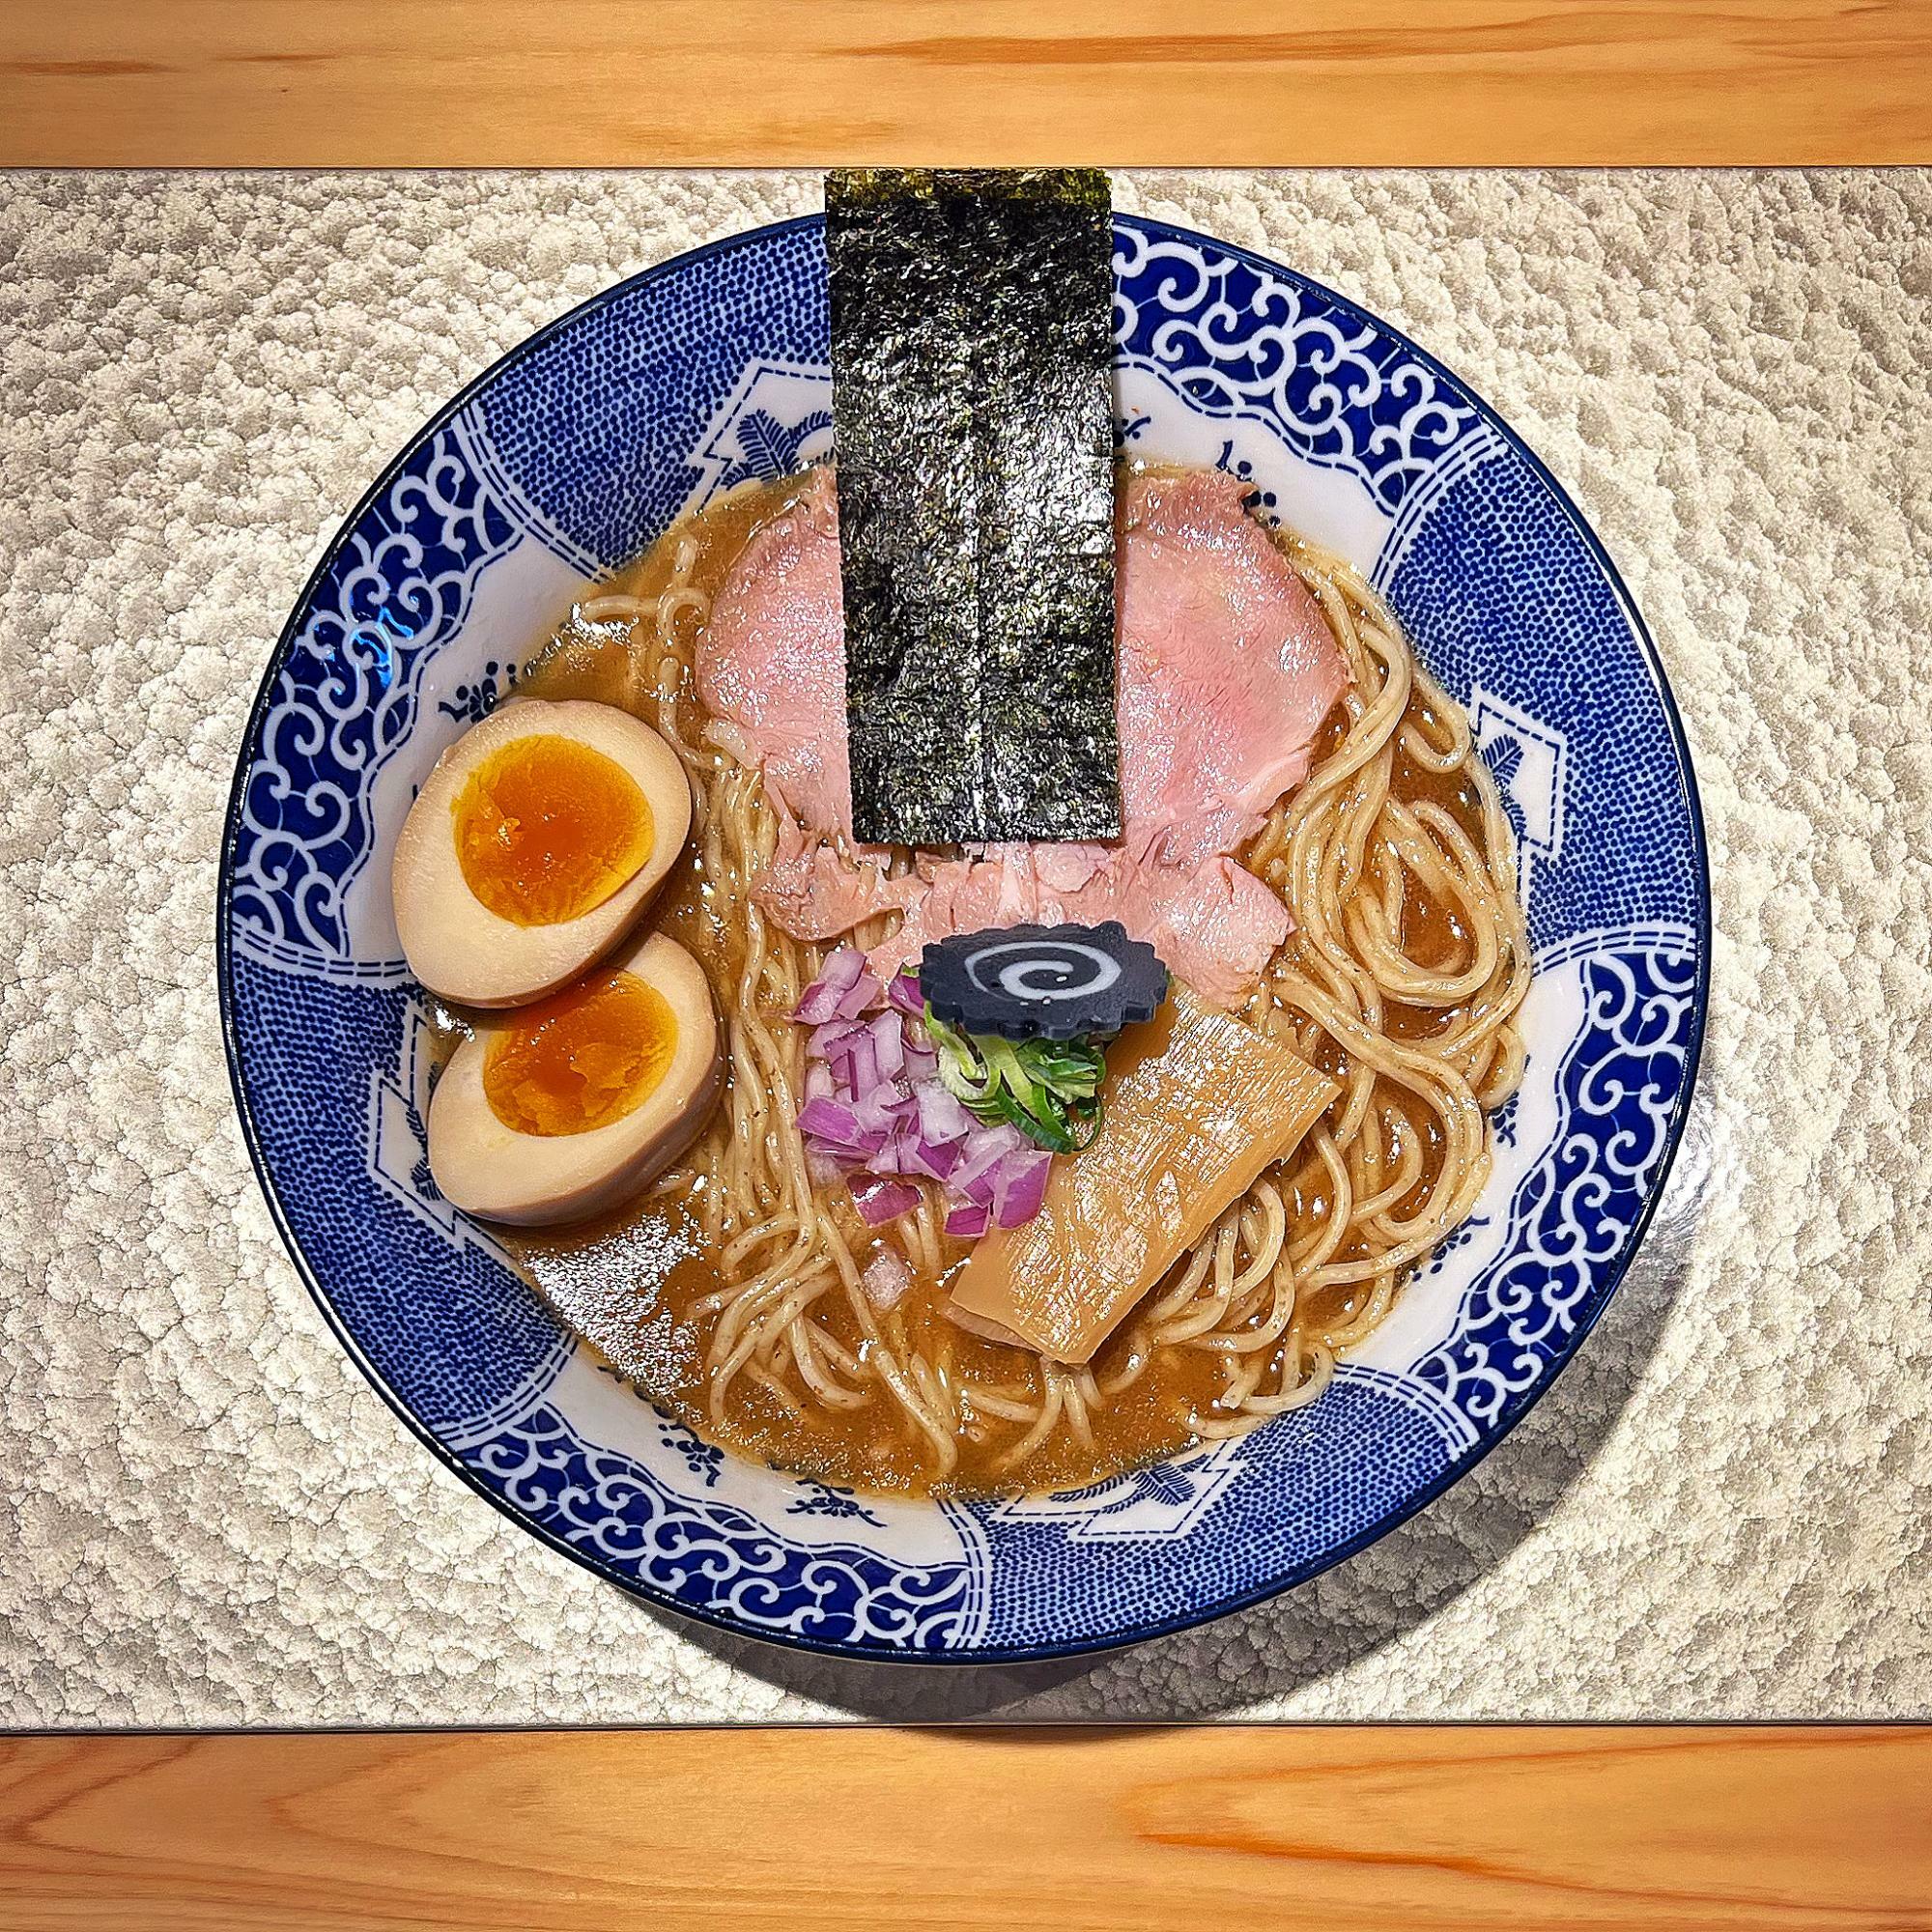 福岡・博多らしい素材にこだわった〈非豚骨なお人〉の「FUK中華そば」は、“はかた地どりと貝出汁”のWスープで仕上げられている